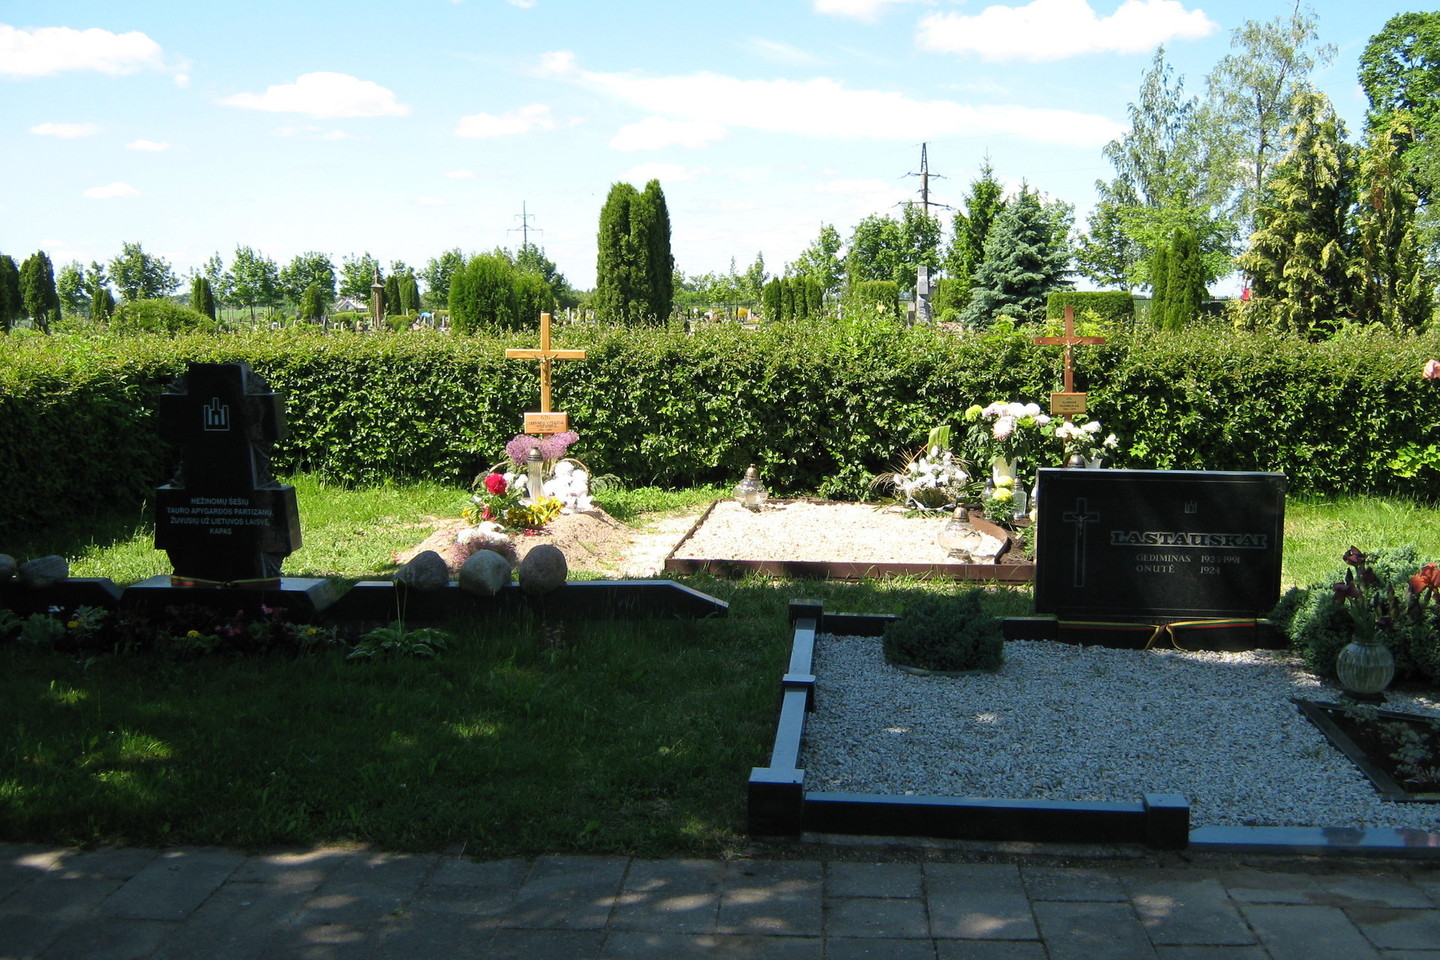 Marijampolės kapinėse, Tauro apygardos partizanų memoriale,šiemet atsiradę du nauji kapai papiktino politinių kalinių ir tremtinių atstovus bei konservatorius. Esą buvo palaidoti laisvės kovų dalyviai, kovęsi kitose apygardose.<br>L.Juodzevičienės nuotr.